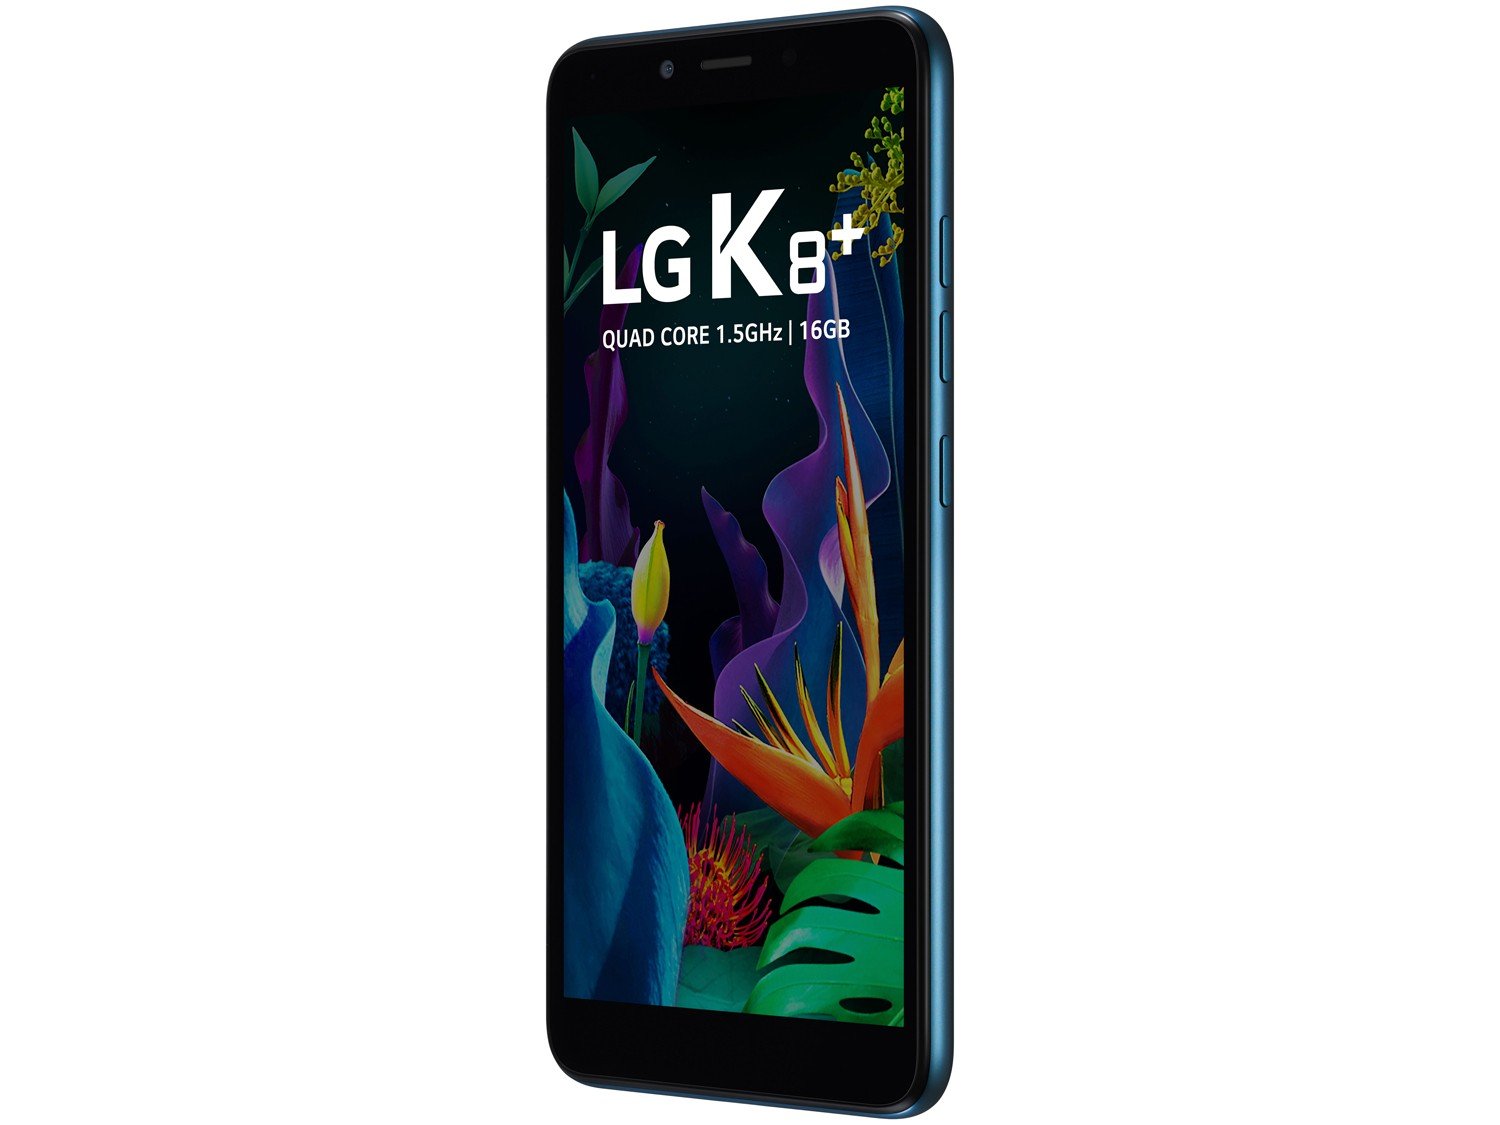 Smartphone LG K8 Plus 16GB Azul 4G Quad-Core - 1GB RAM 5,45" Câm. 8MP + Câm. Selfie 5MP - 4